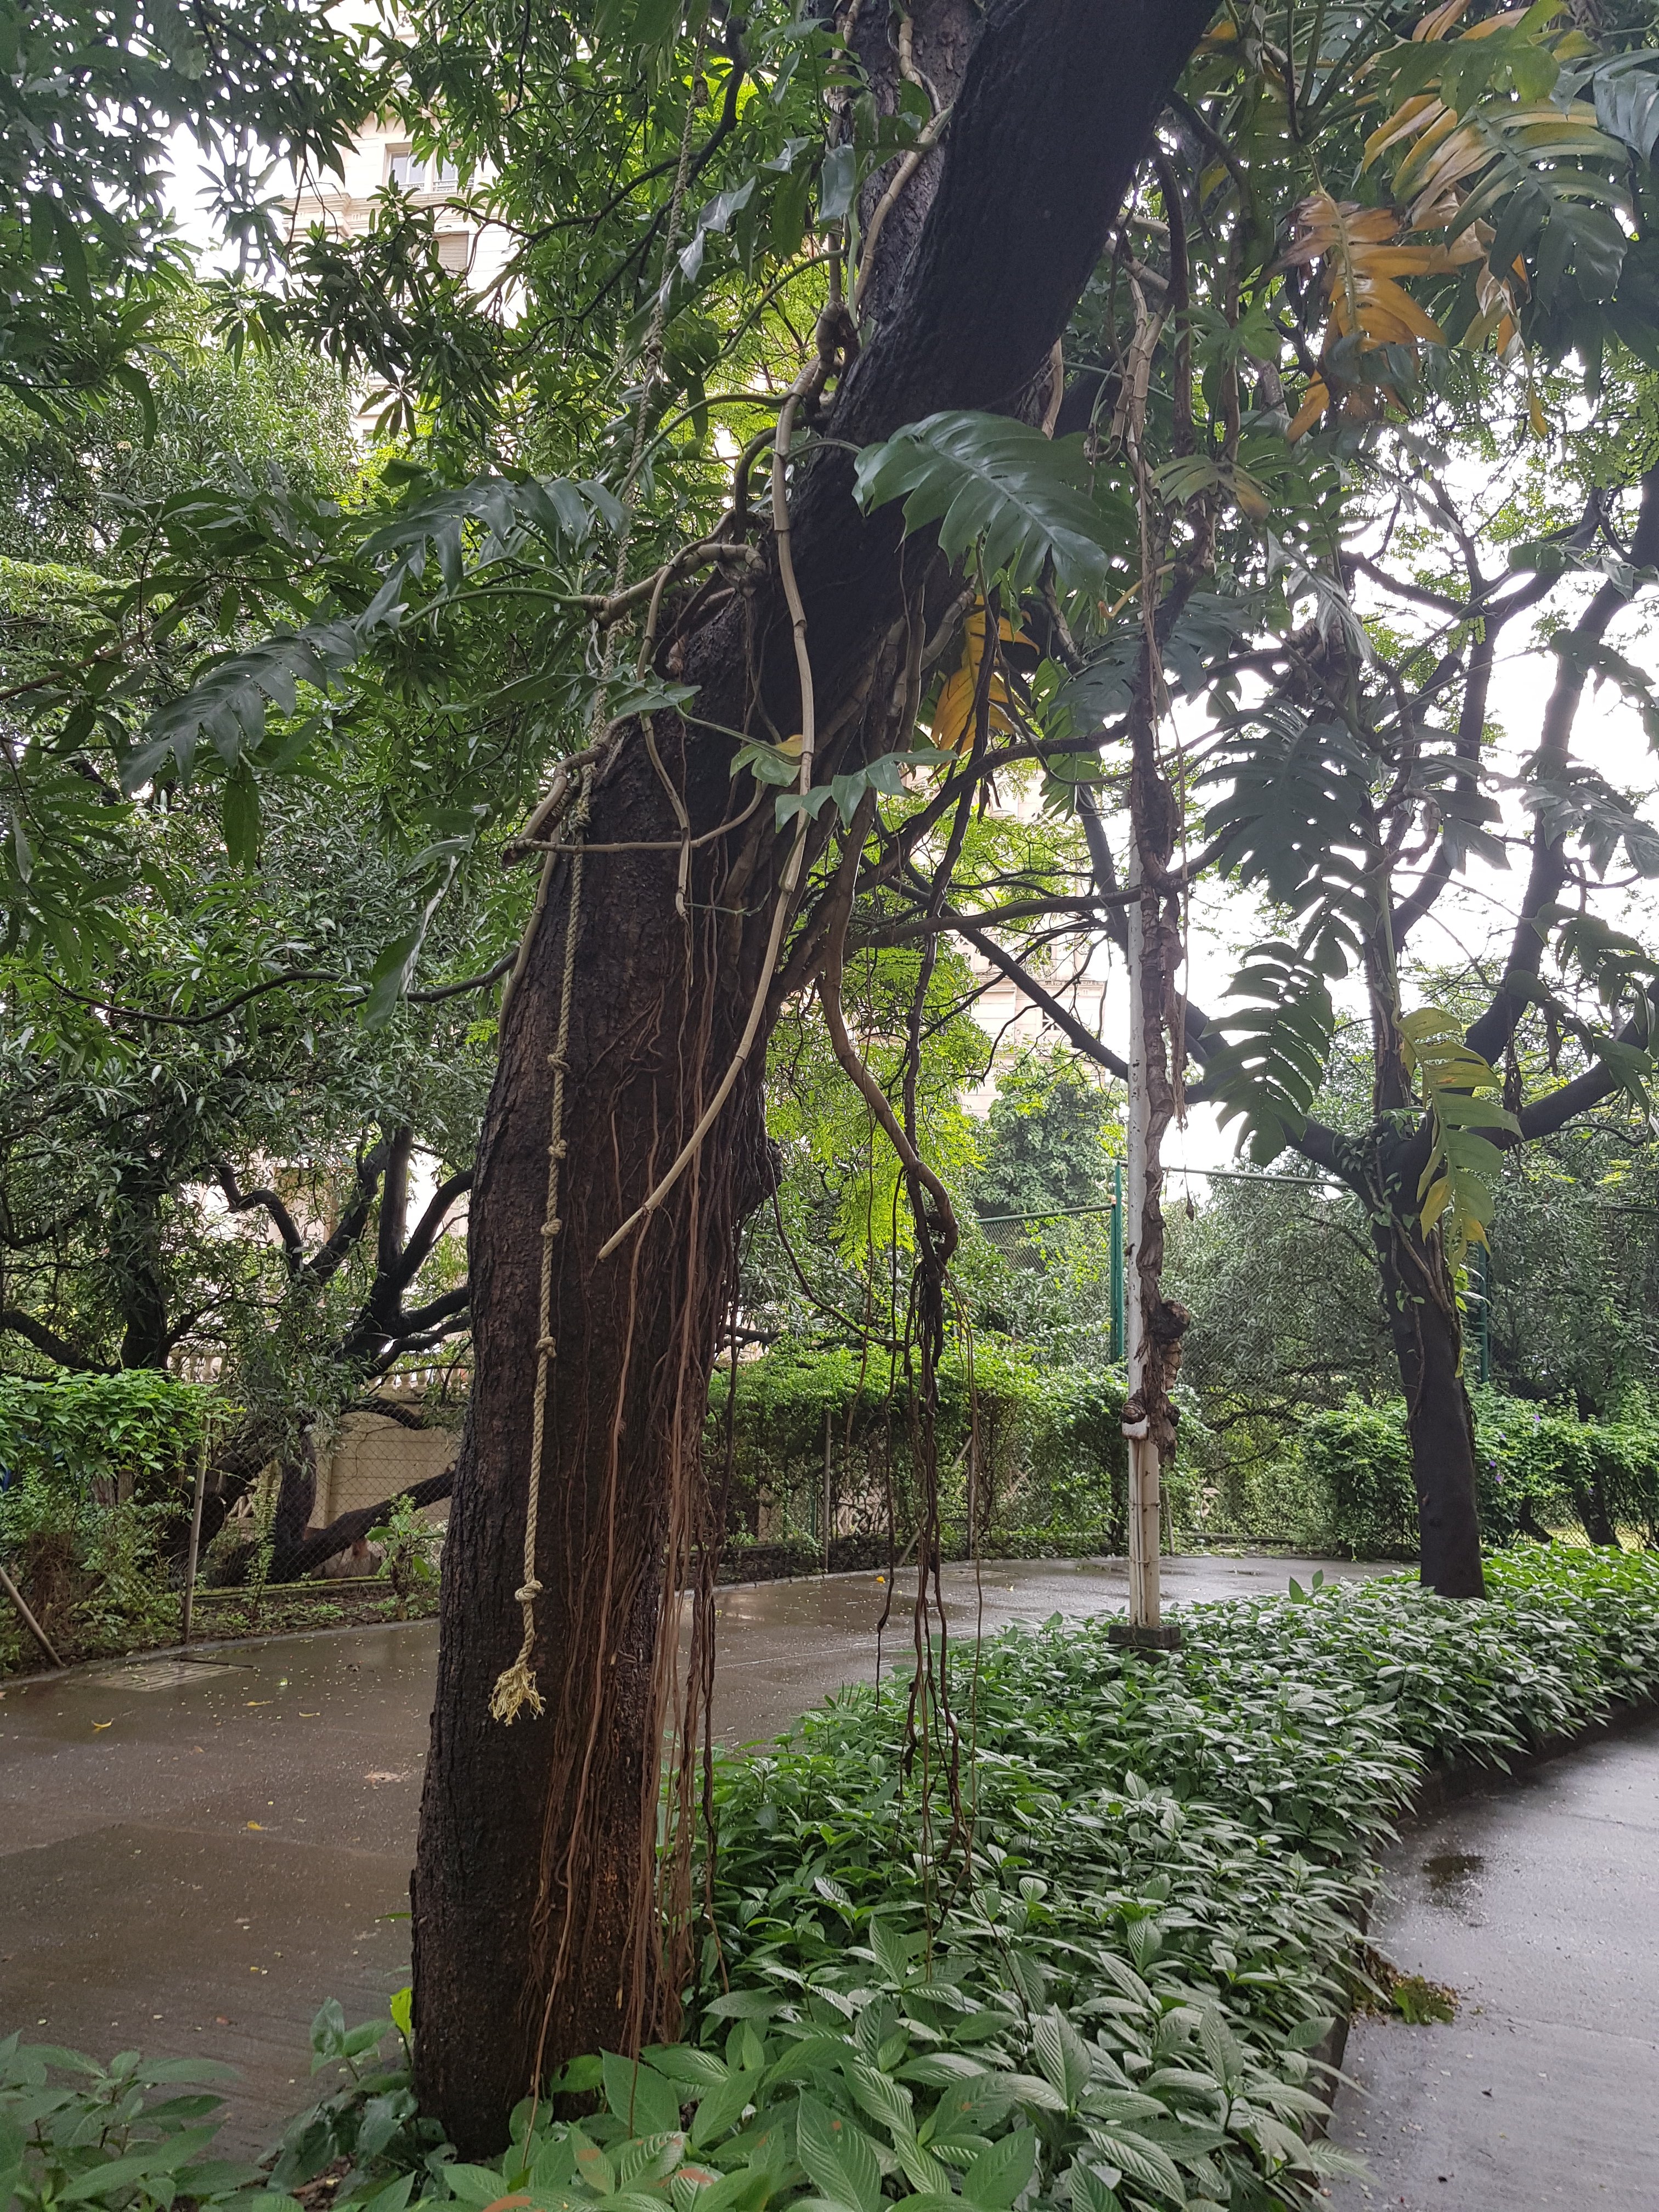 Mumbai Diaries : Finding my walking place